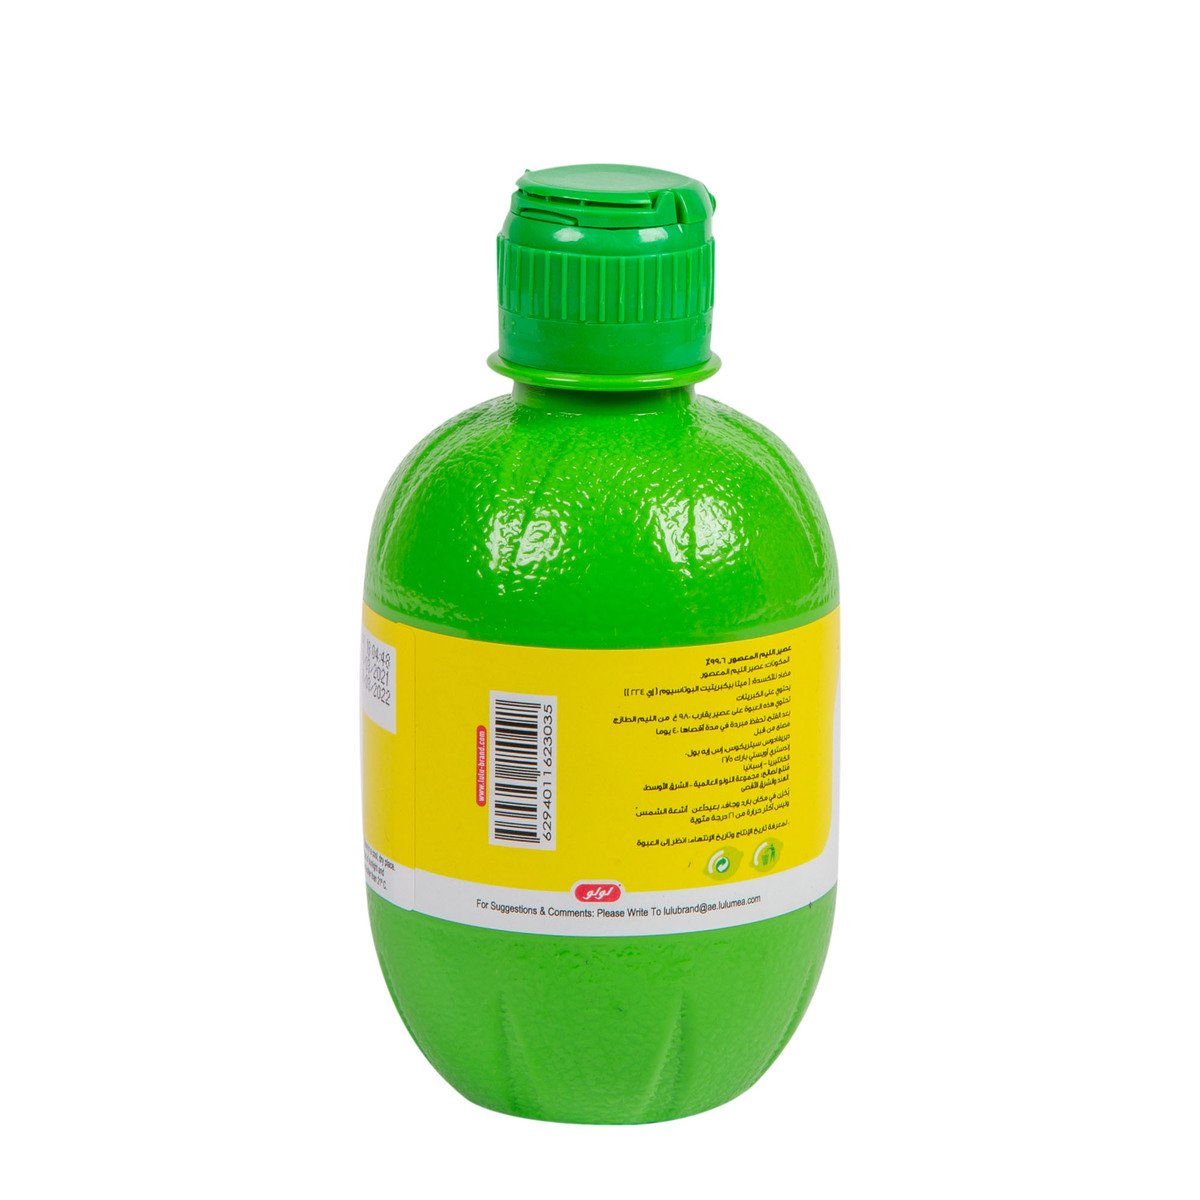 LuLu Freshly Squeezed Lemon juice 280 ml Online at Best Price